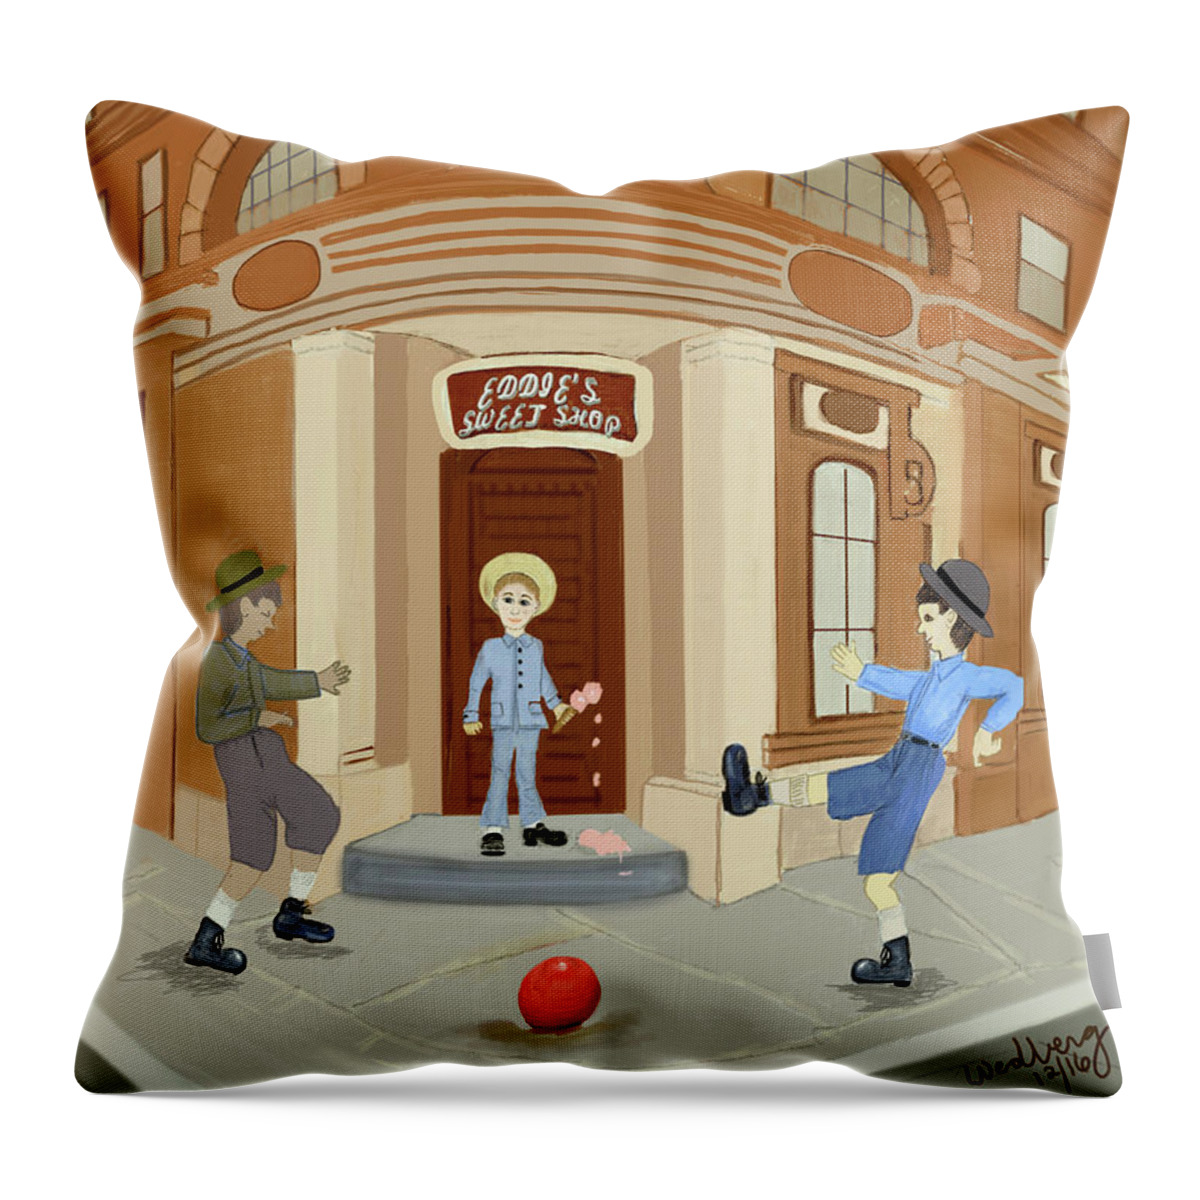 Brooklyn Throw Pillow featuring the digital art Brooklyn Boys by Christina Wedberg